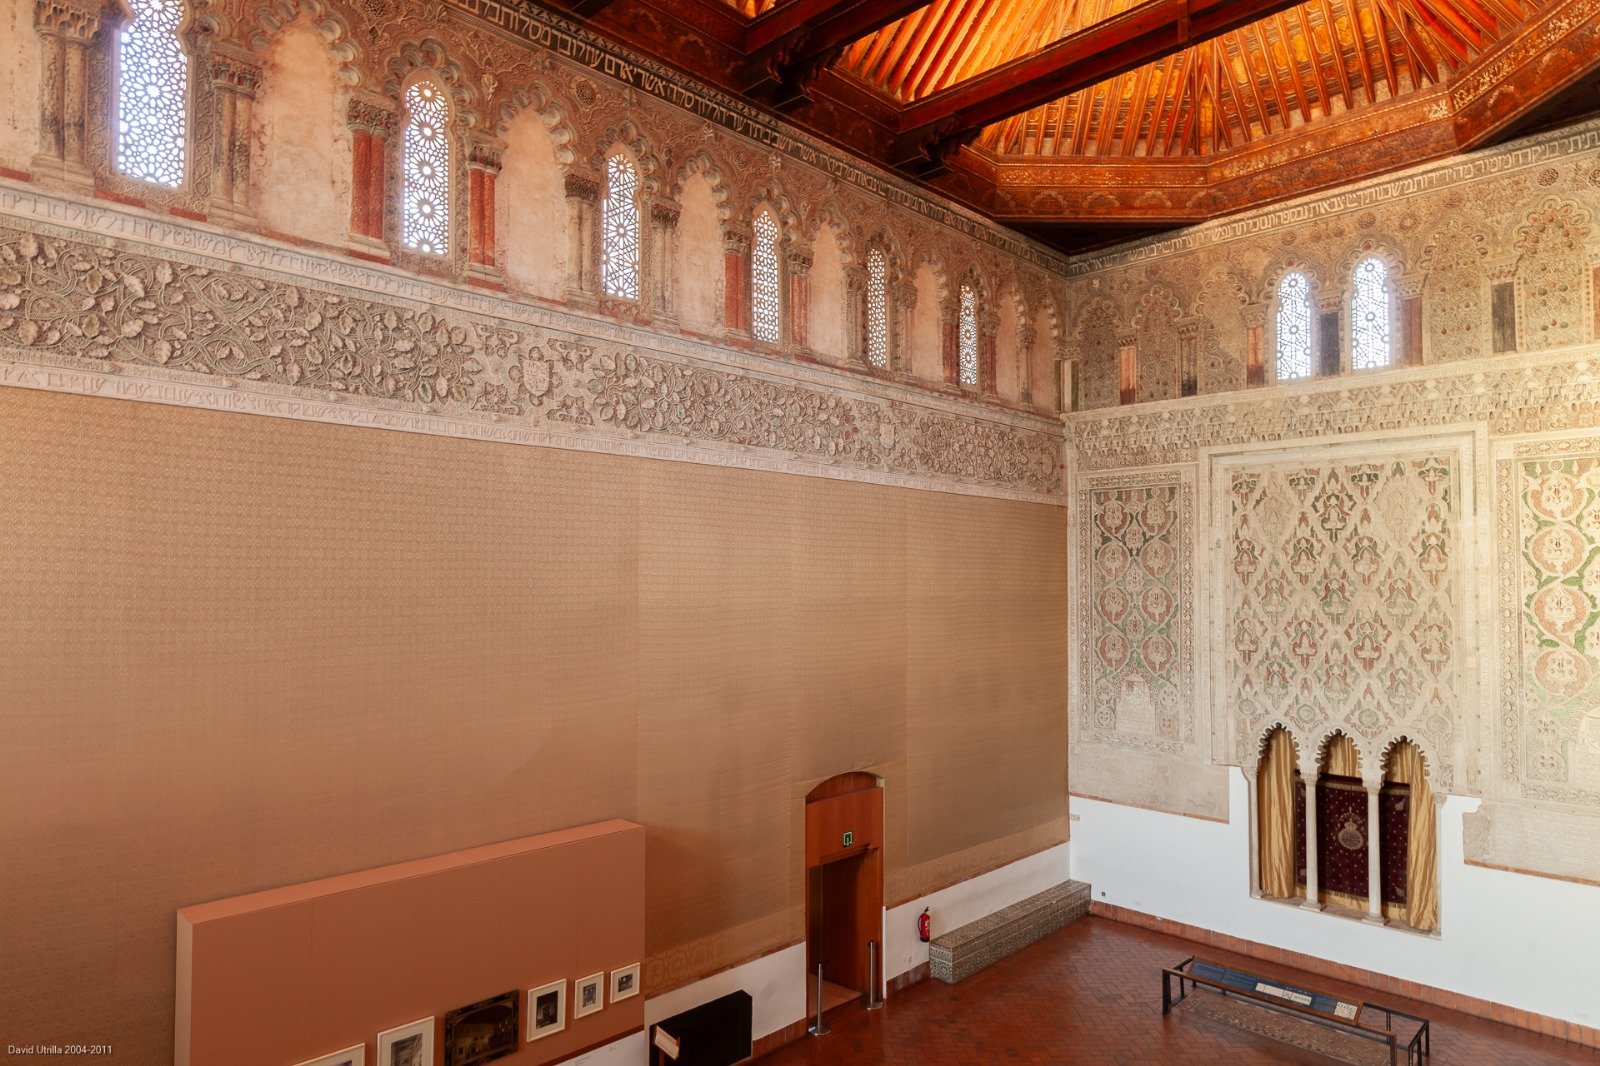 Curiosidades del Museo Sefardí (Sinagoga del Tránsito) de Toledo que tal vez no conoces, con motivo de su 60 aniversario – Leyendas de Toledo